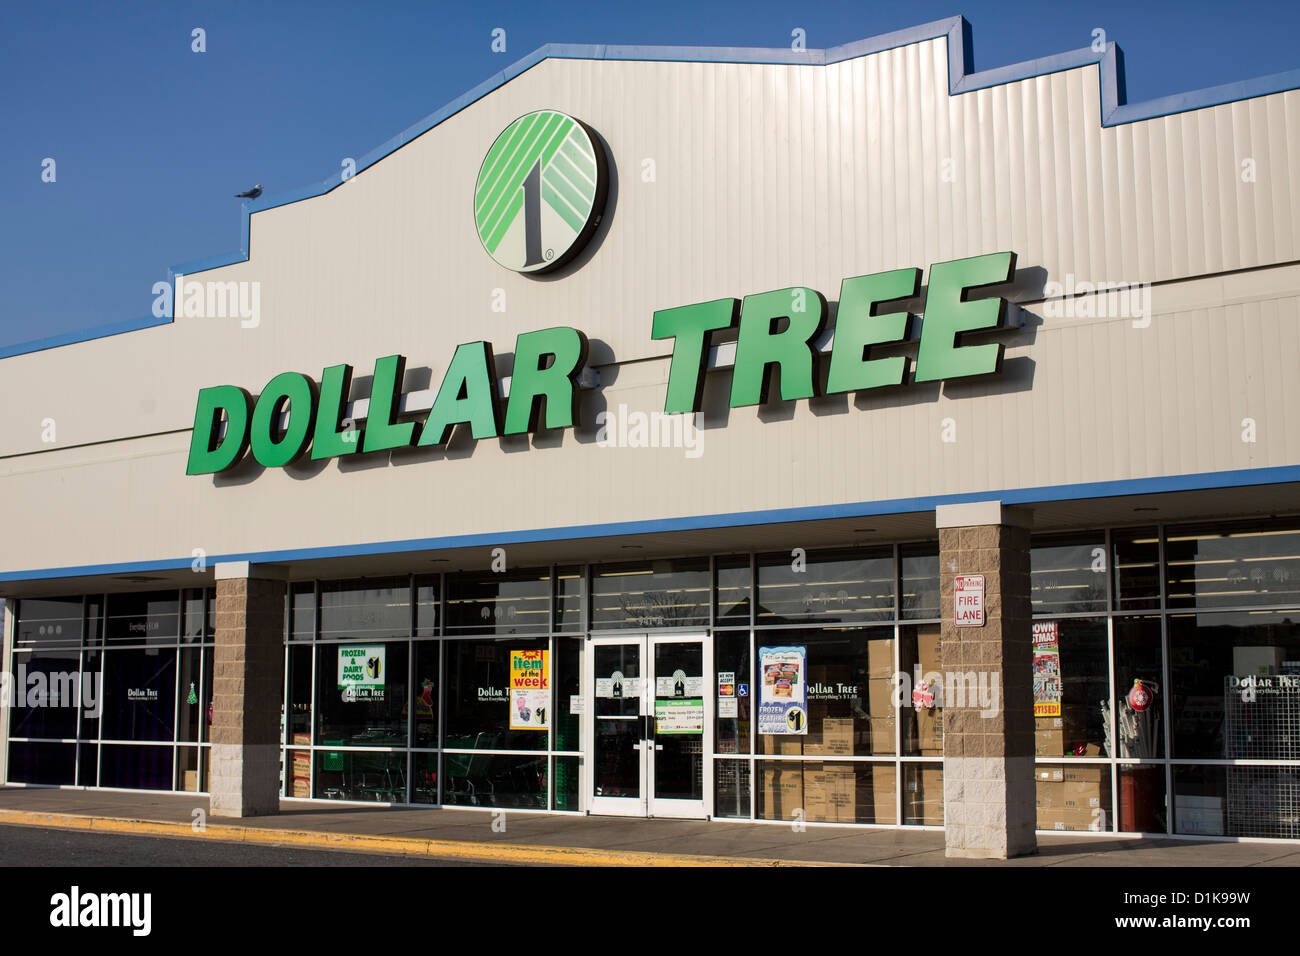 Un Dollar Tree, magasin de vente au détail. Banque D'Images